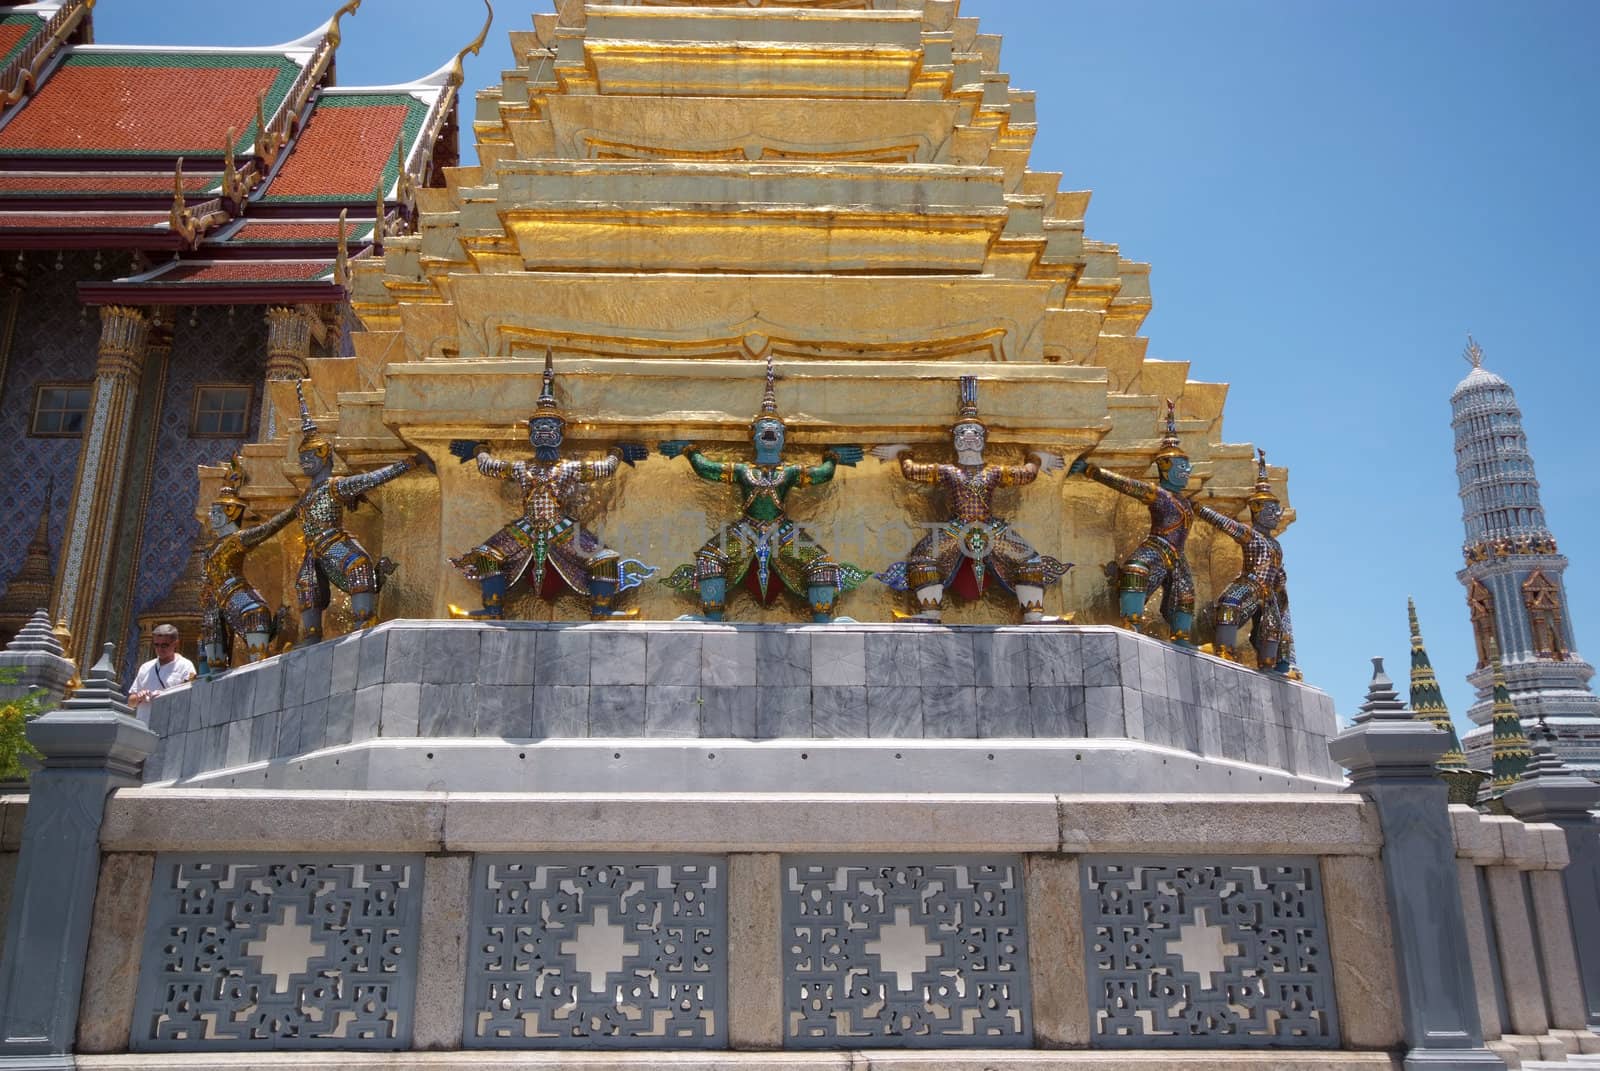 The Golden pagoda of Wat Phra Kaew temple by opasstudio